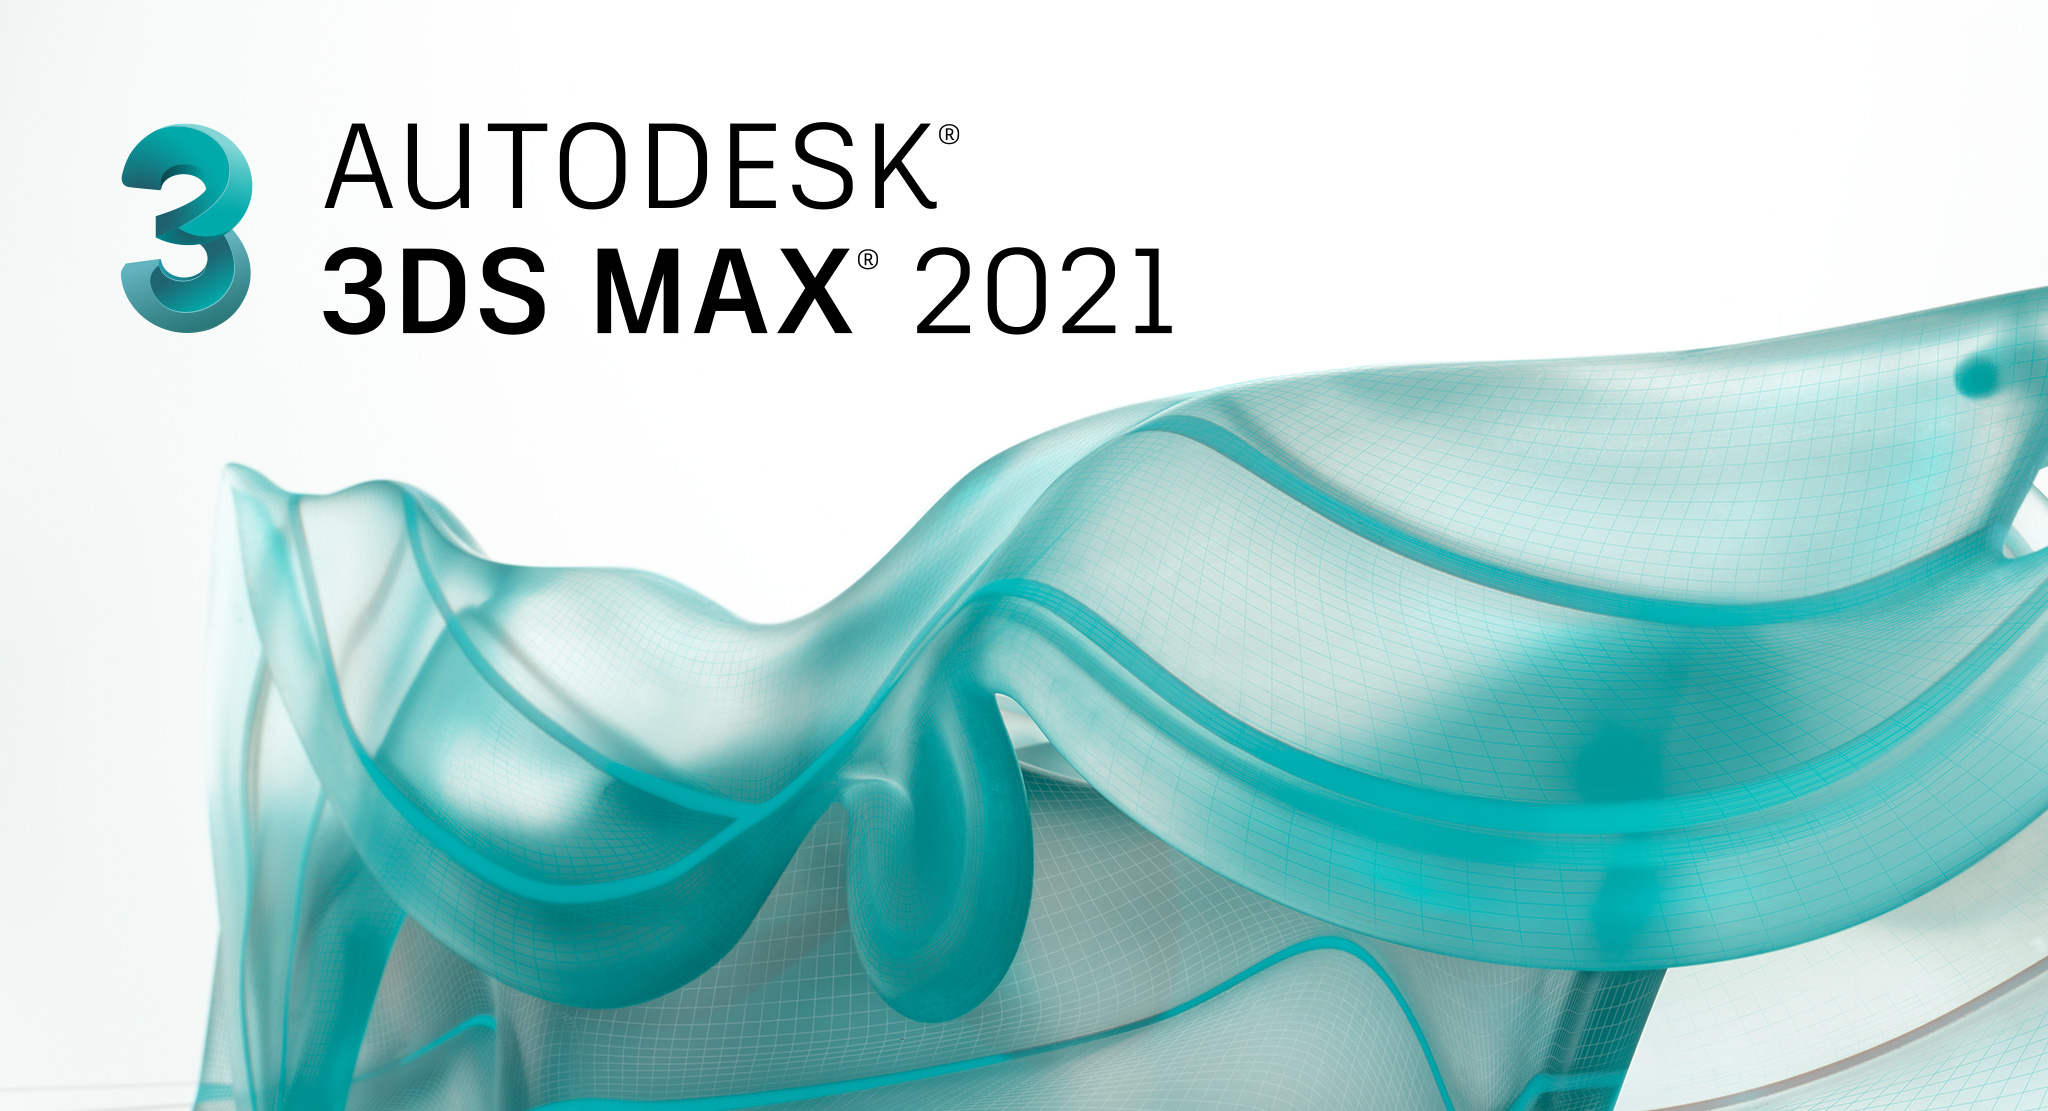 قابلیت های جدید نرم افزار Autodesk 3Ds Max 2021 منتشر شد.